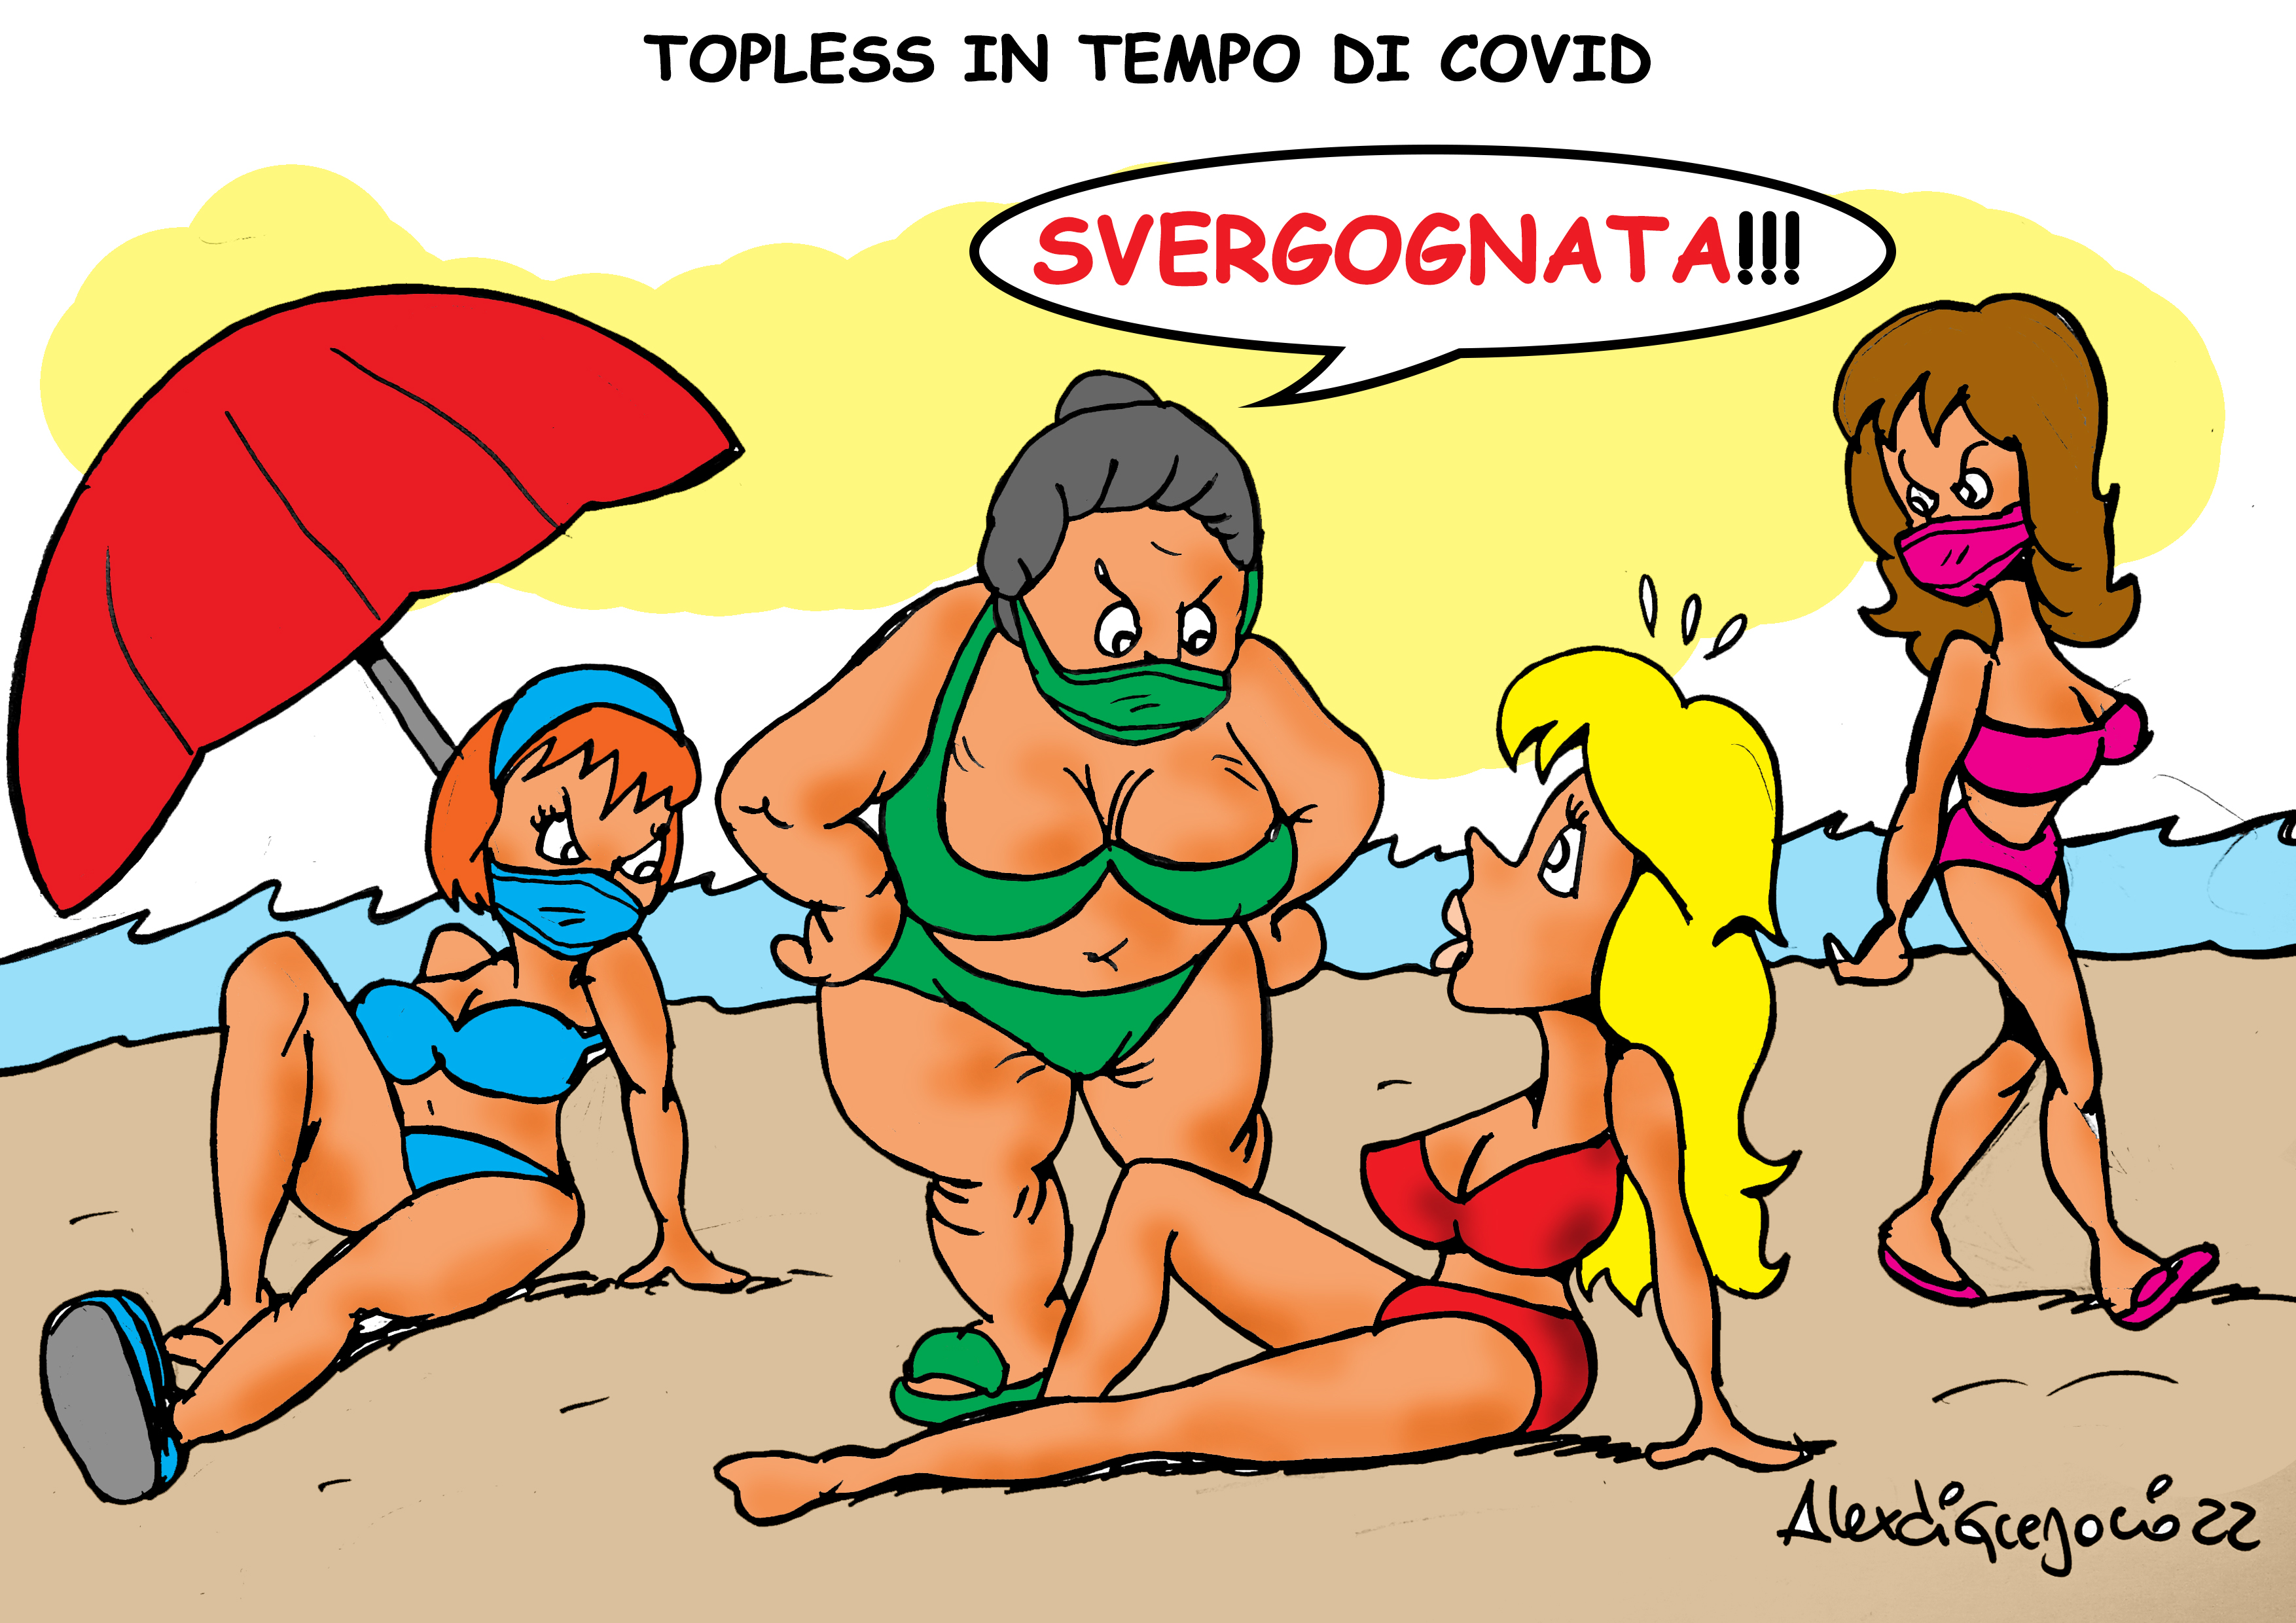 Topless in tempo di Covid